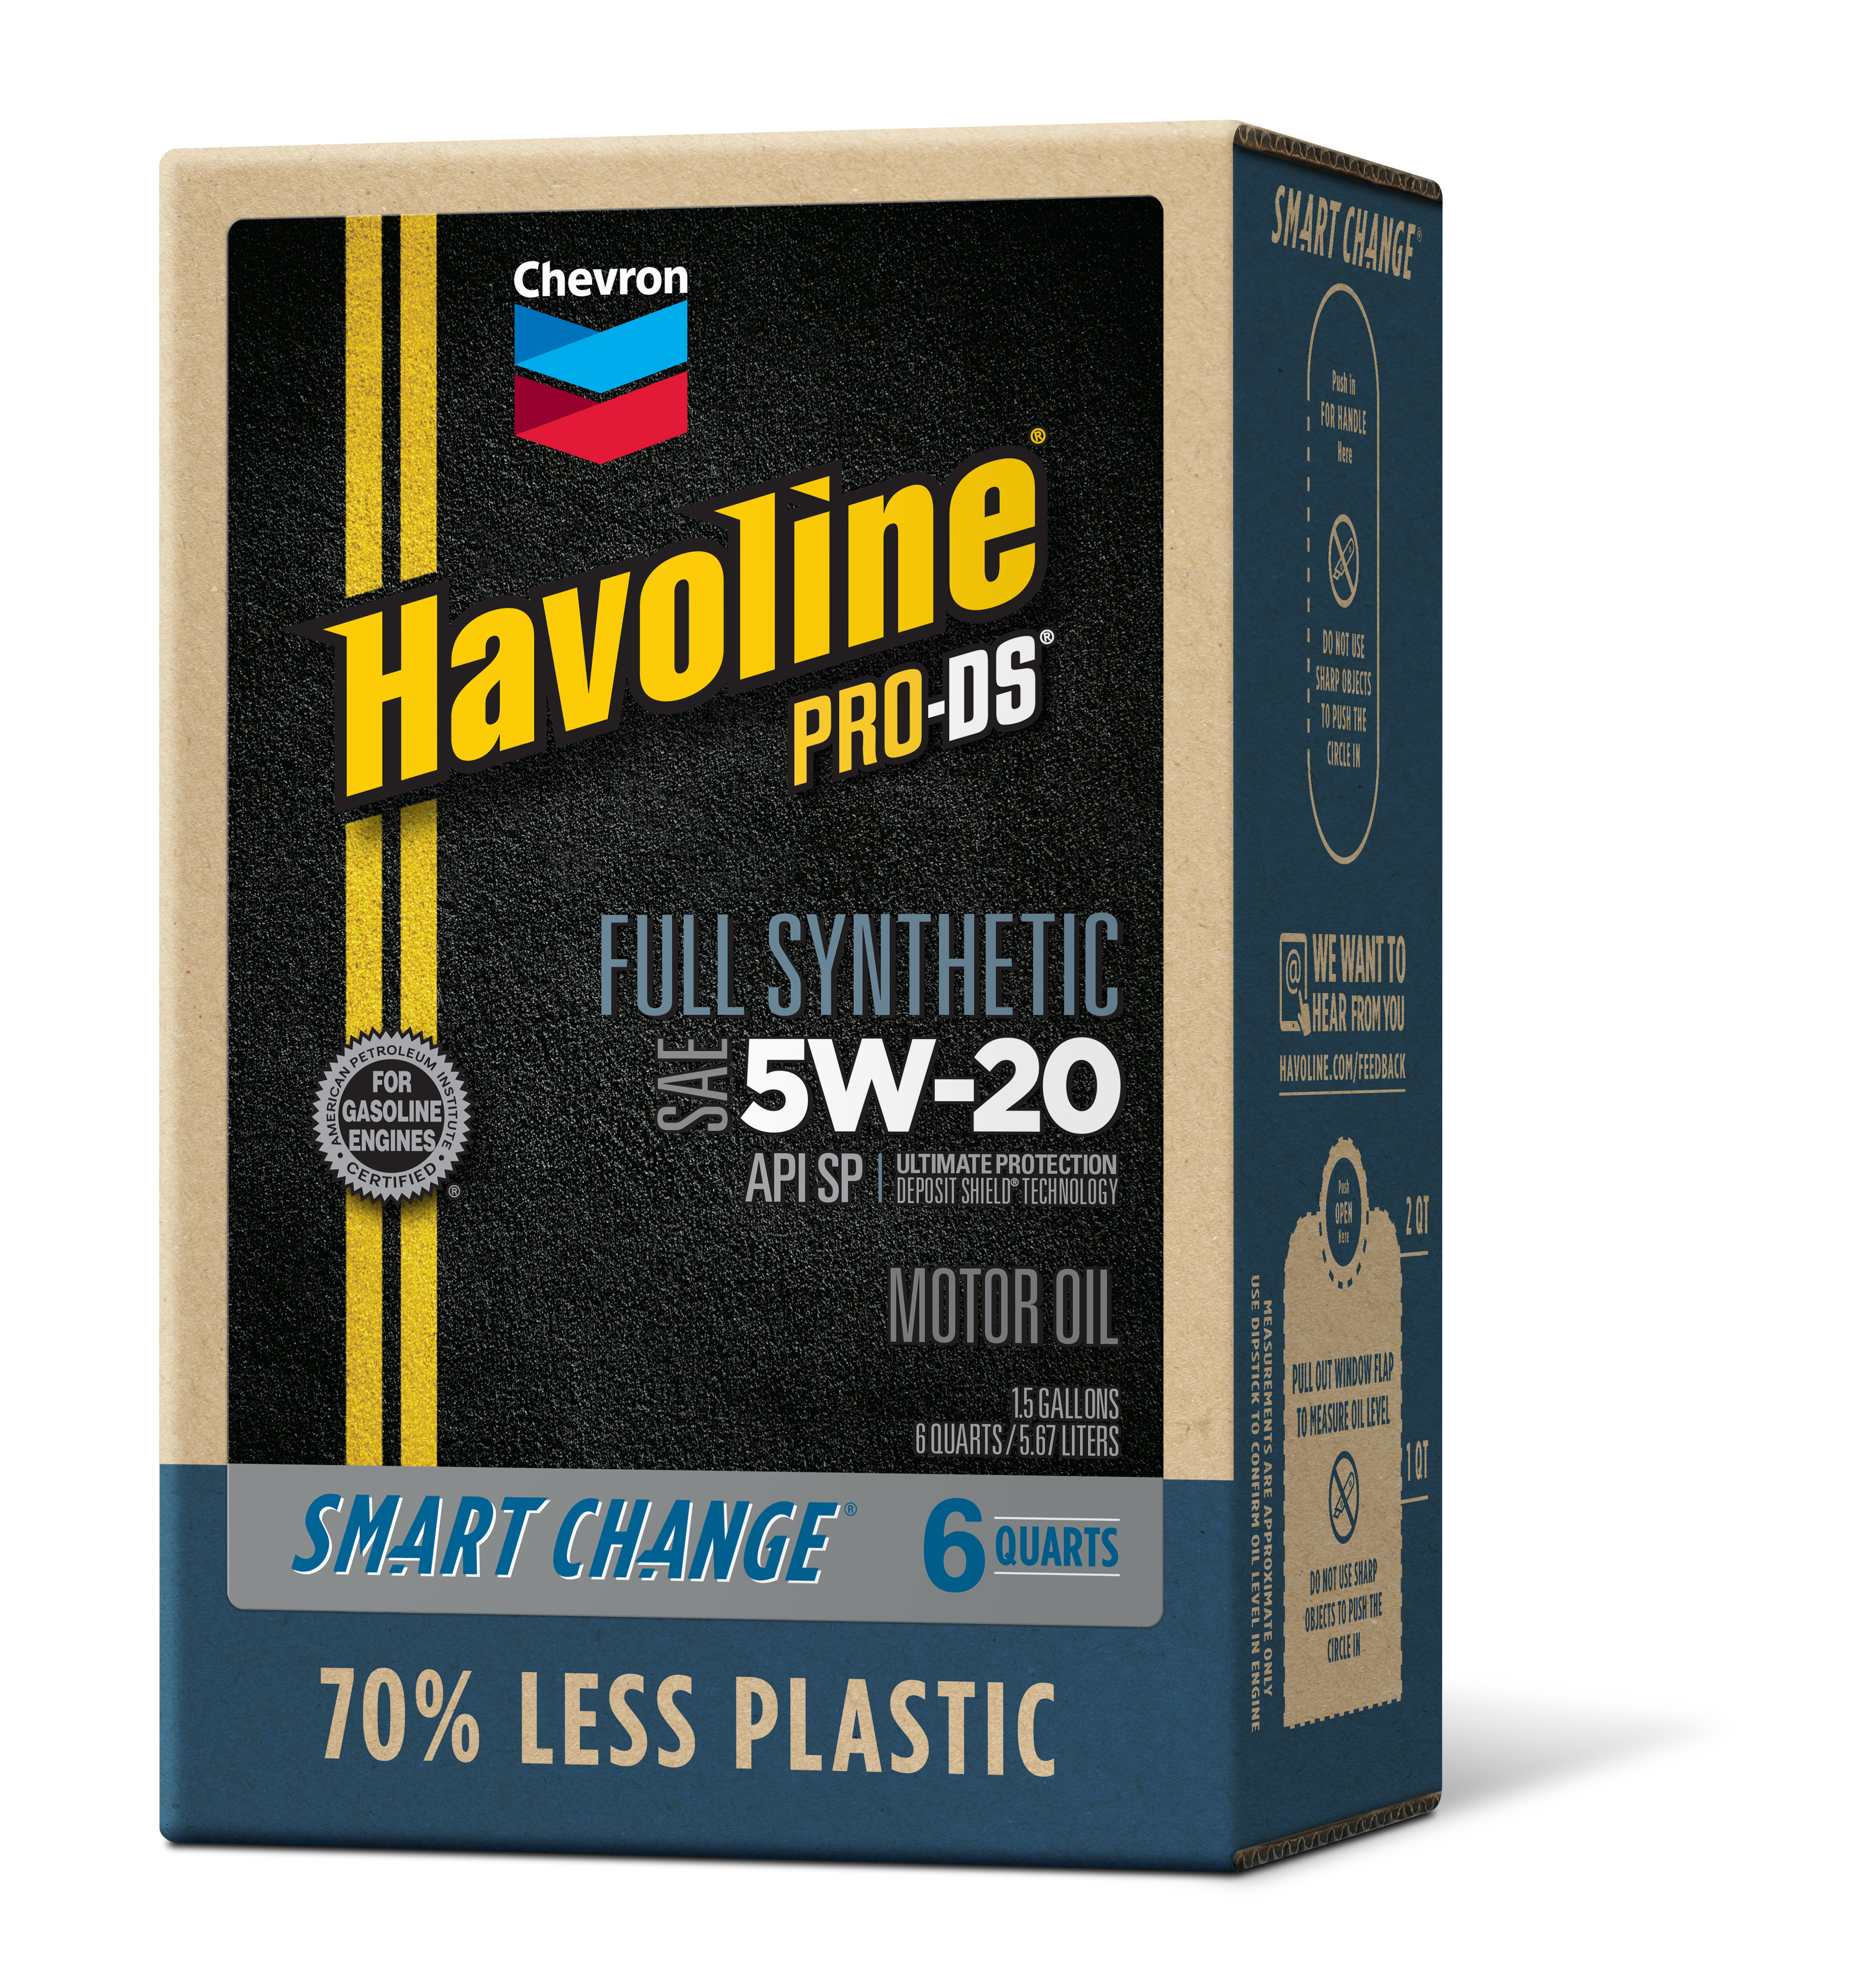 Chevron Havoline ProDS Full Synthetic Motor Oil 5W-20, 6 Quart - image 2 of 7